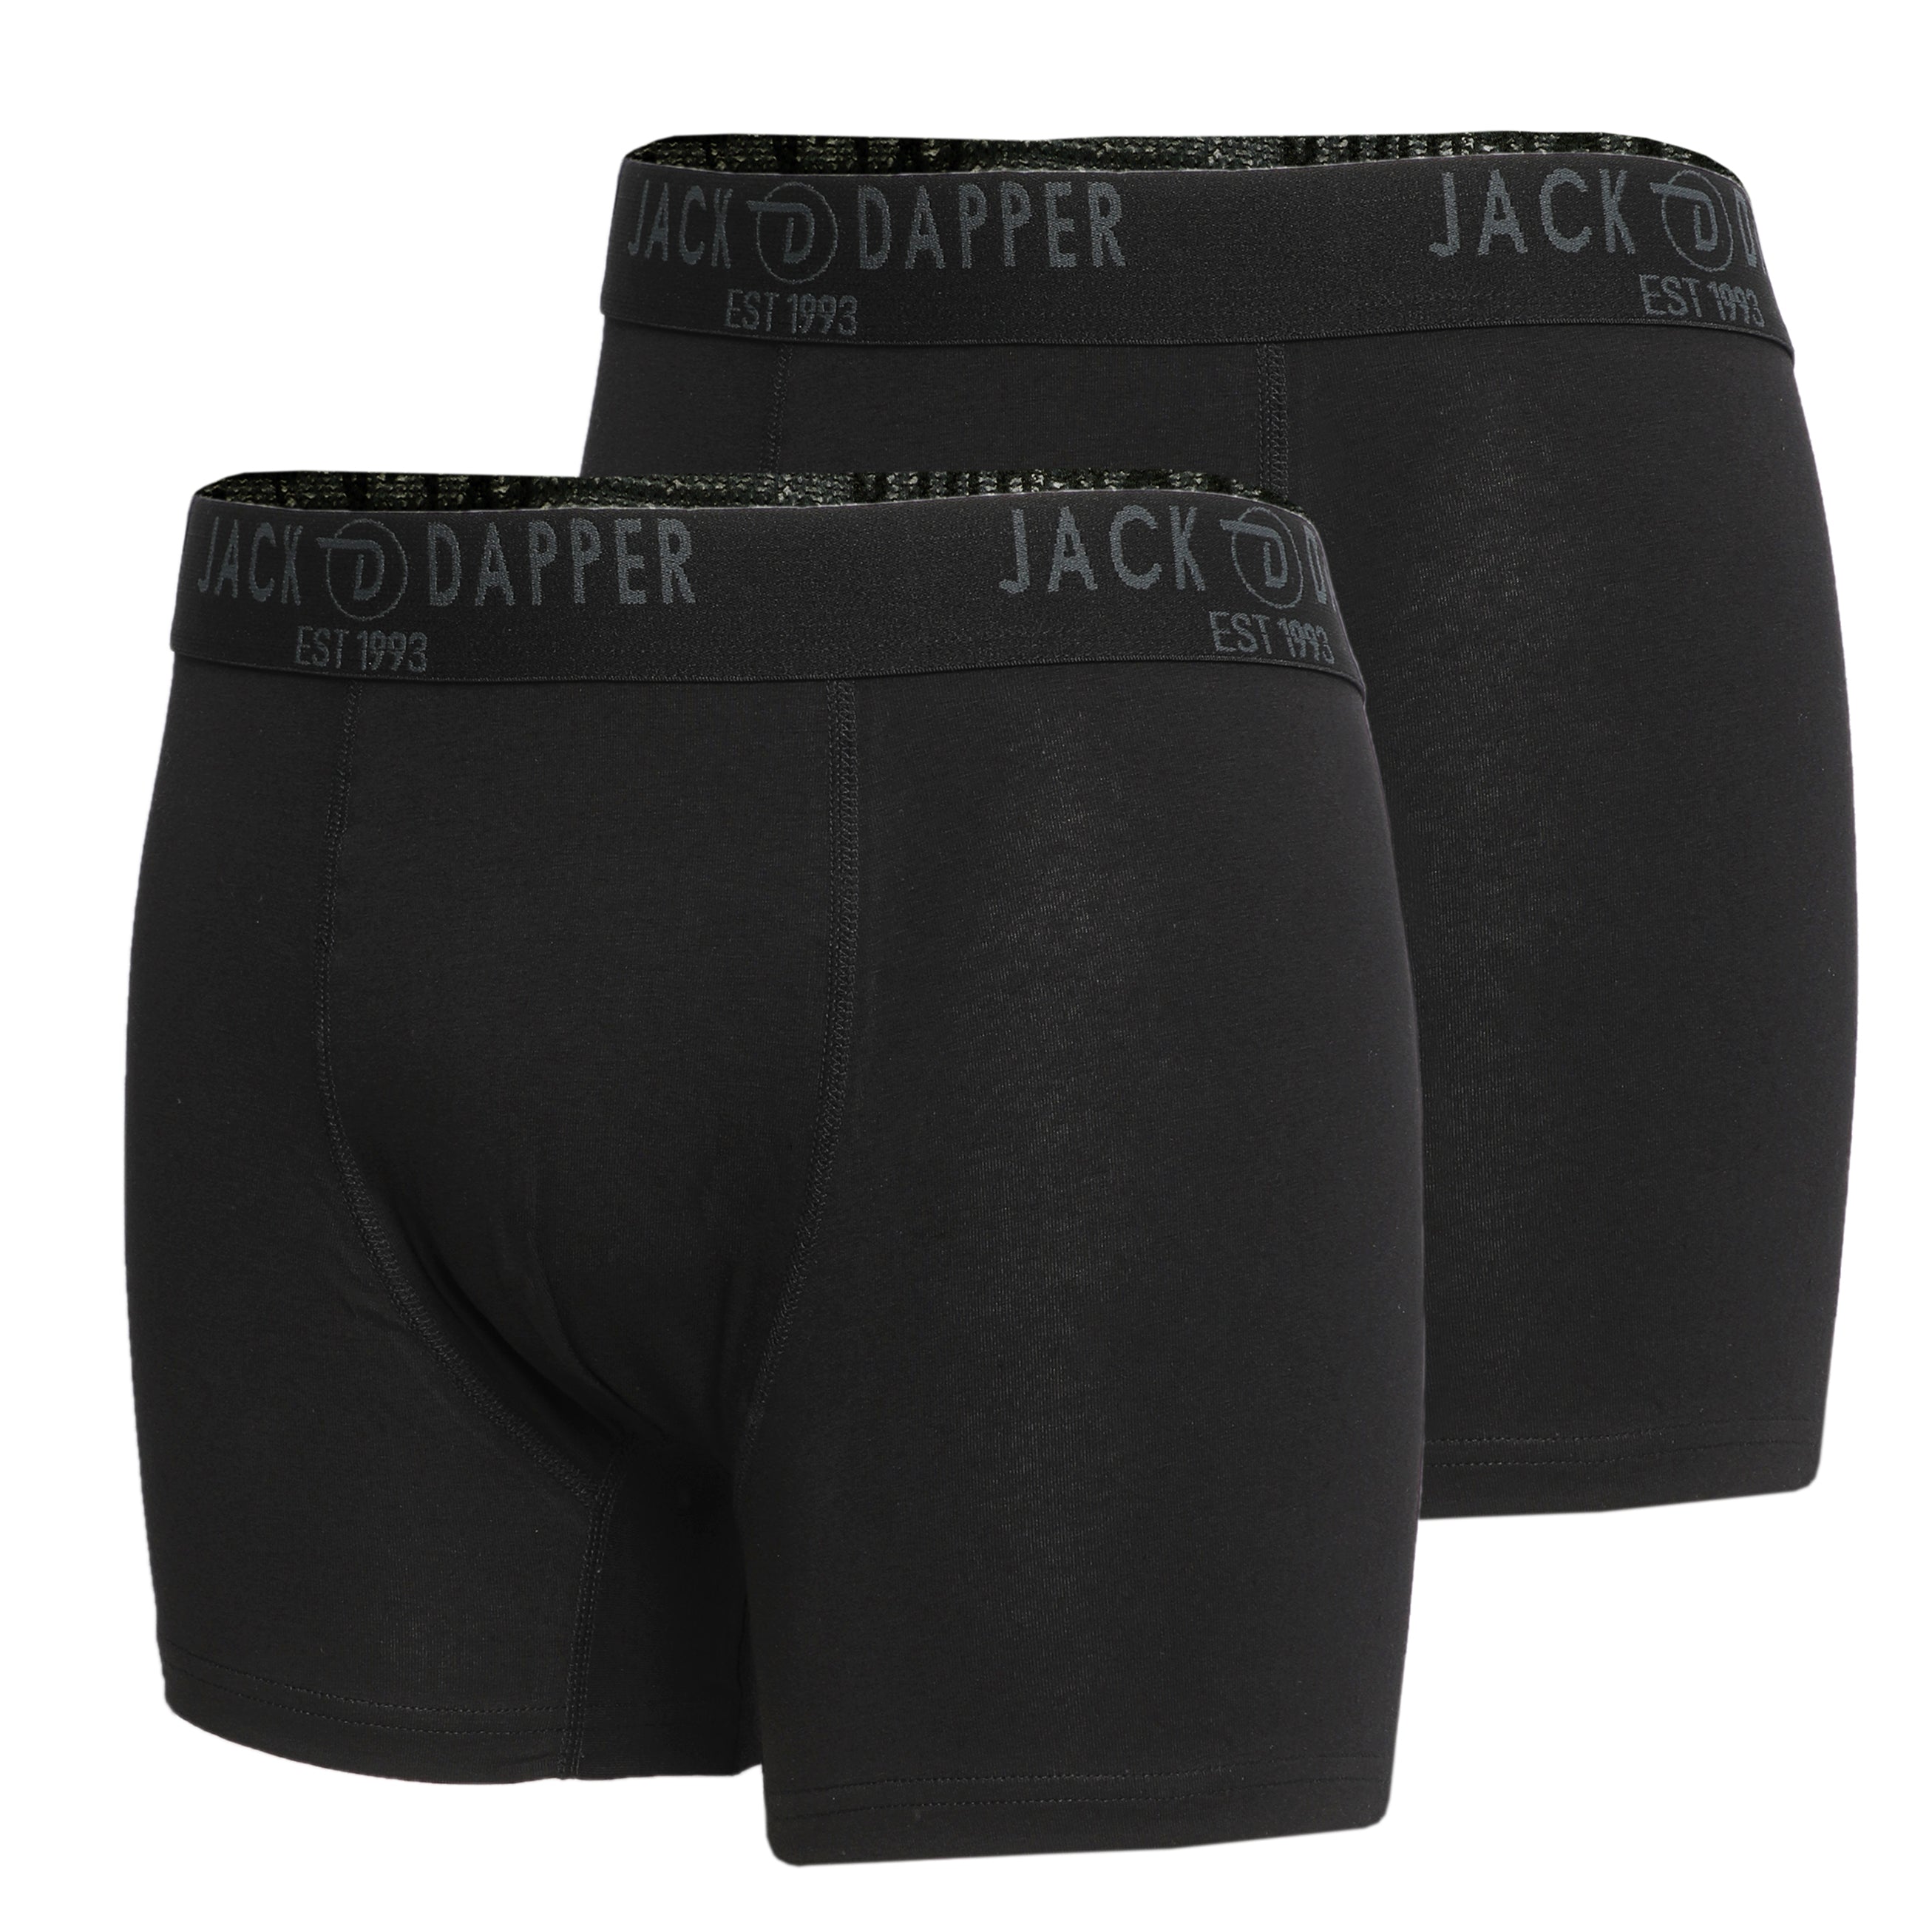 Jack Dapper Black 2-Piece Cotton Underwear